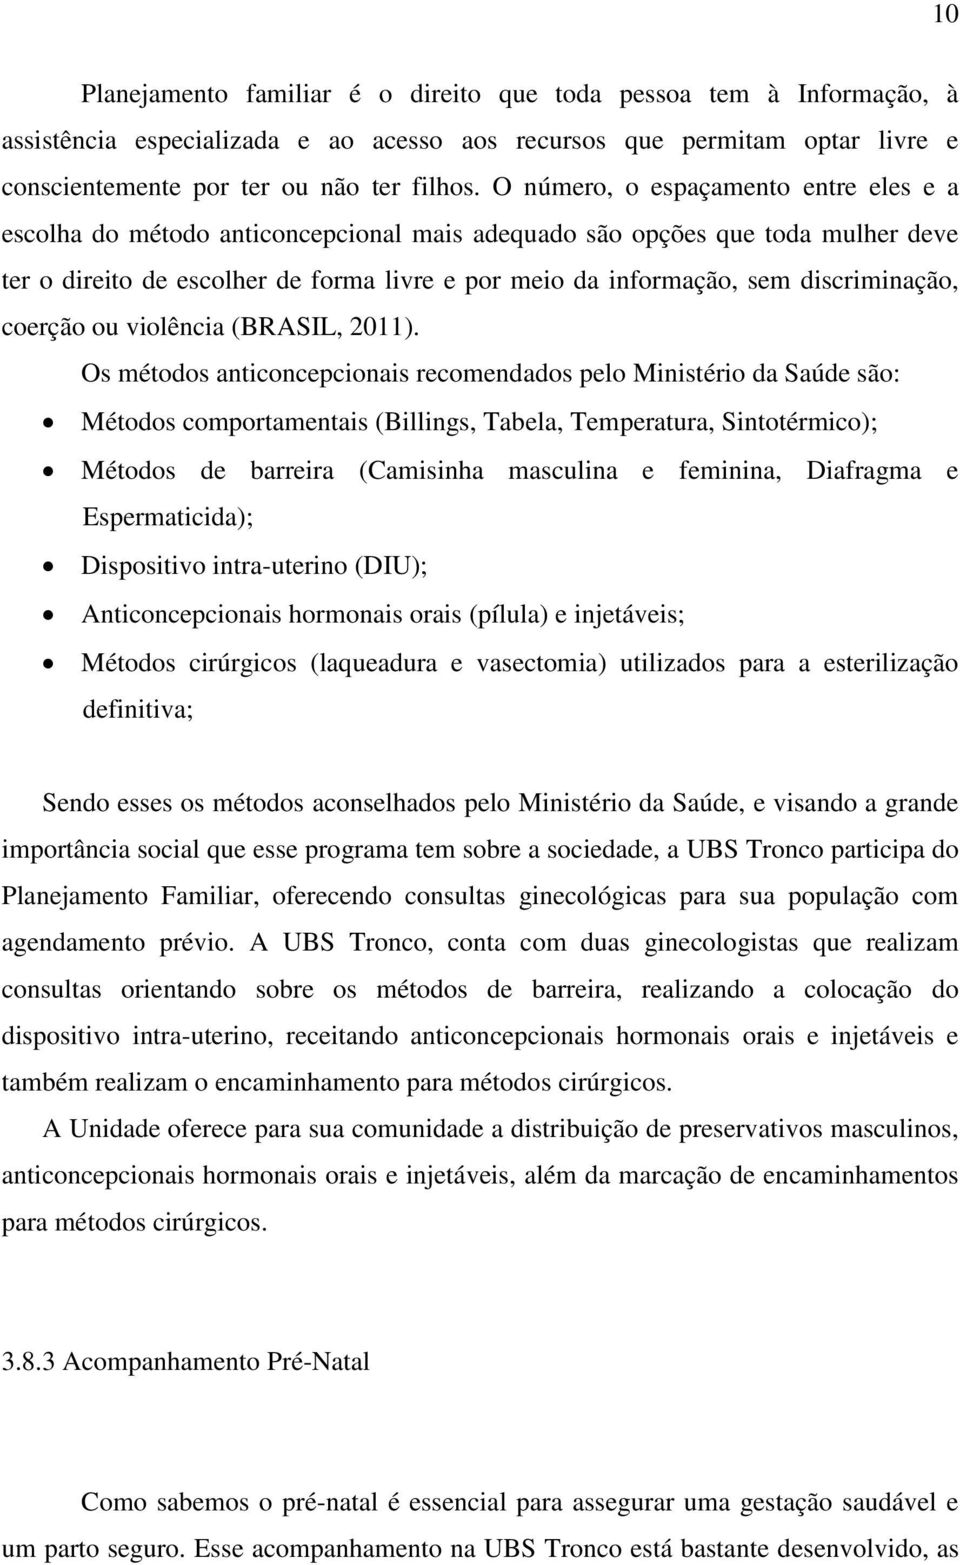 discriminação, coerção ou violência (BRASIL, 2011).